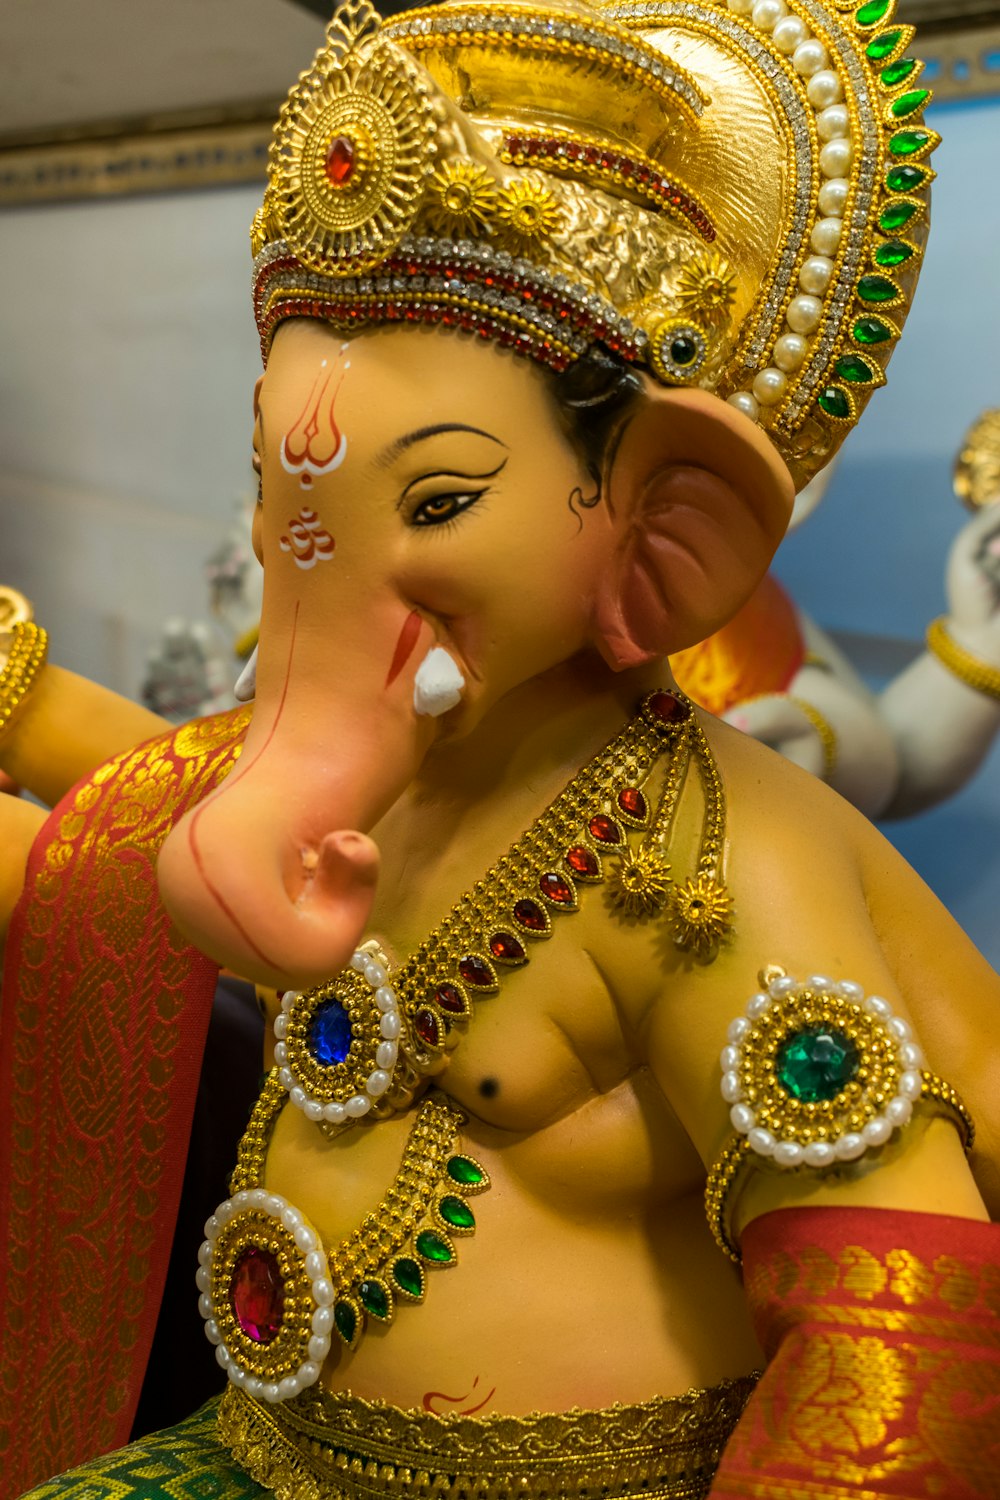 Una estatua de un elefante con un tocado de oro